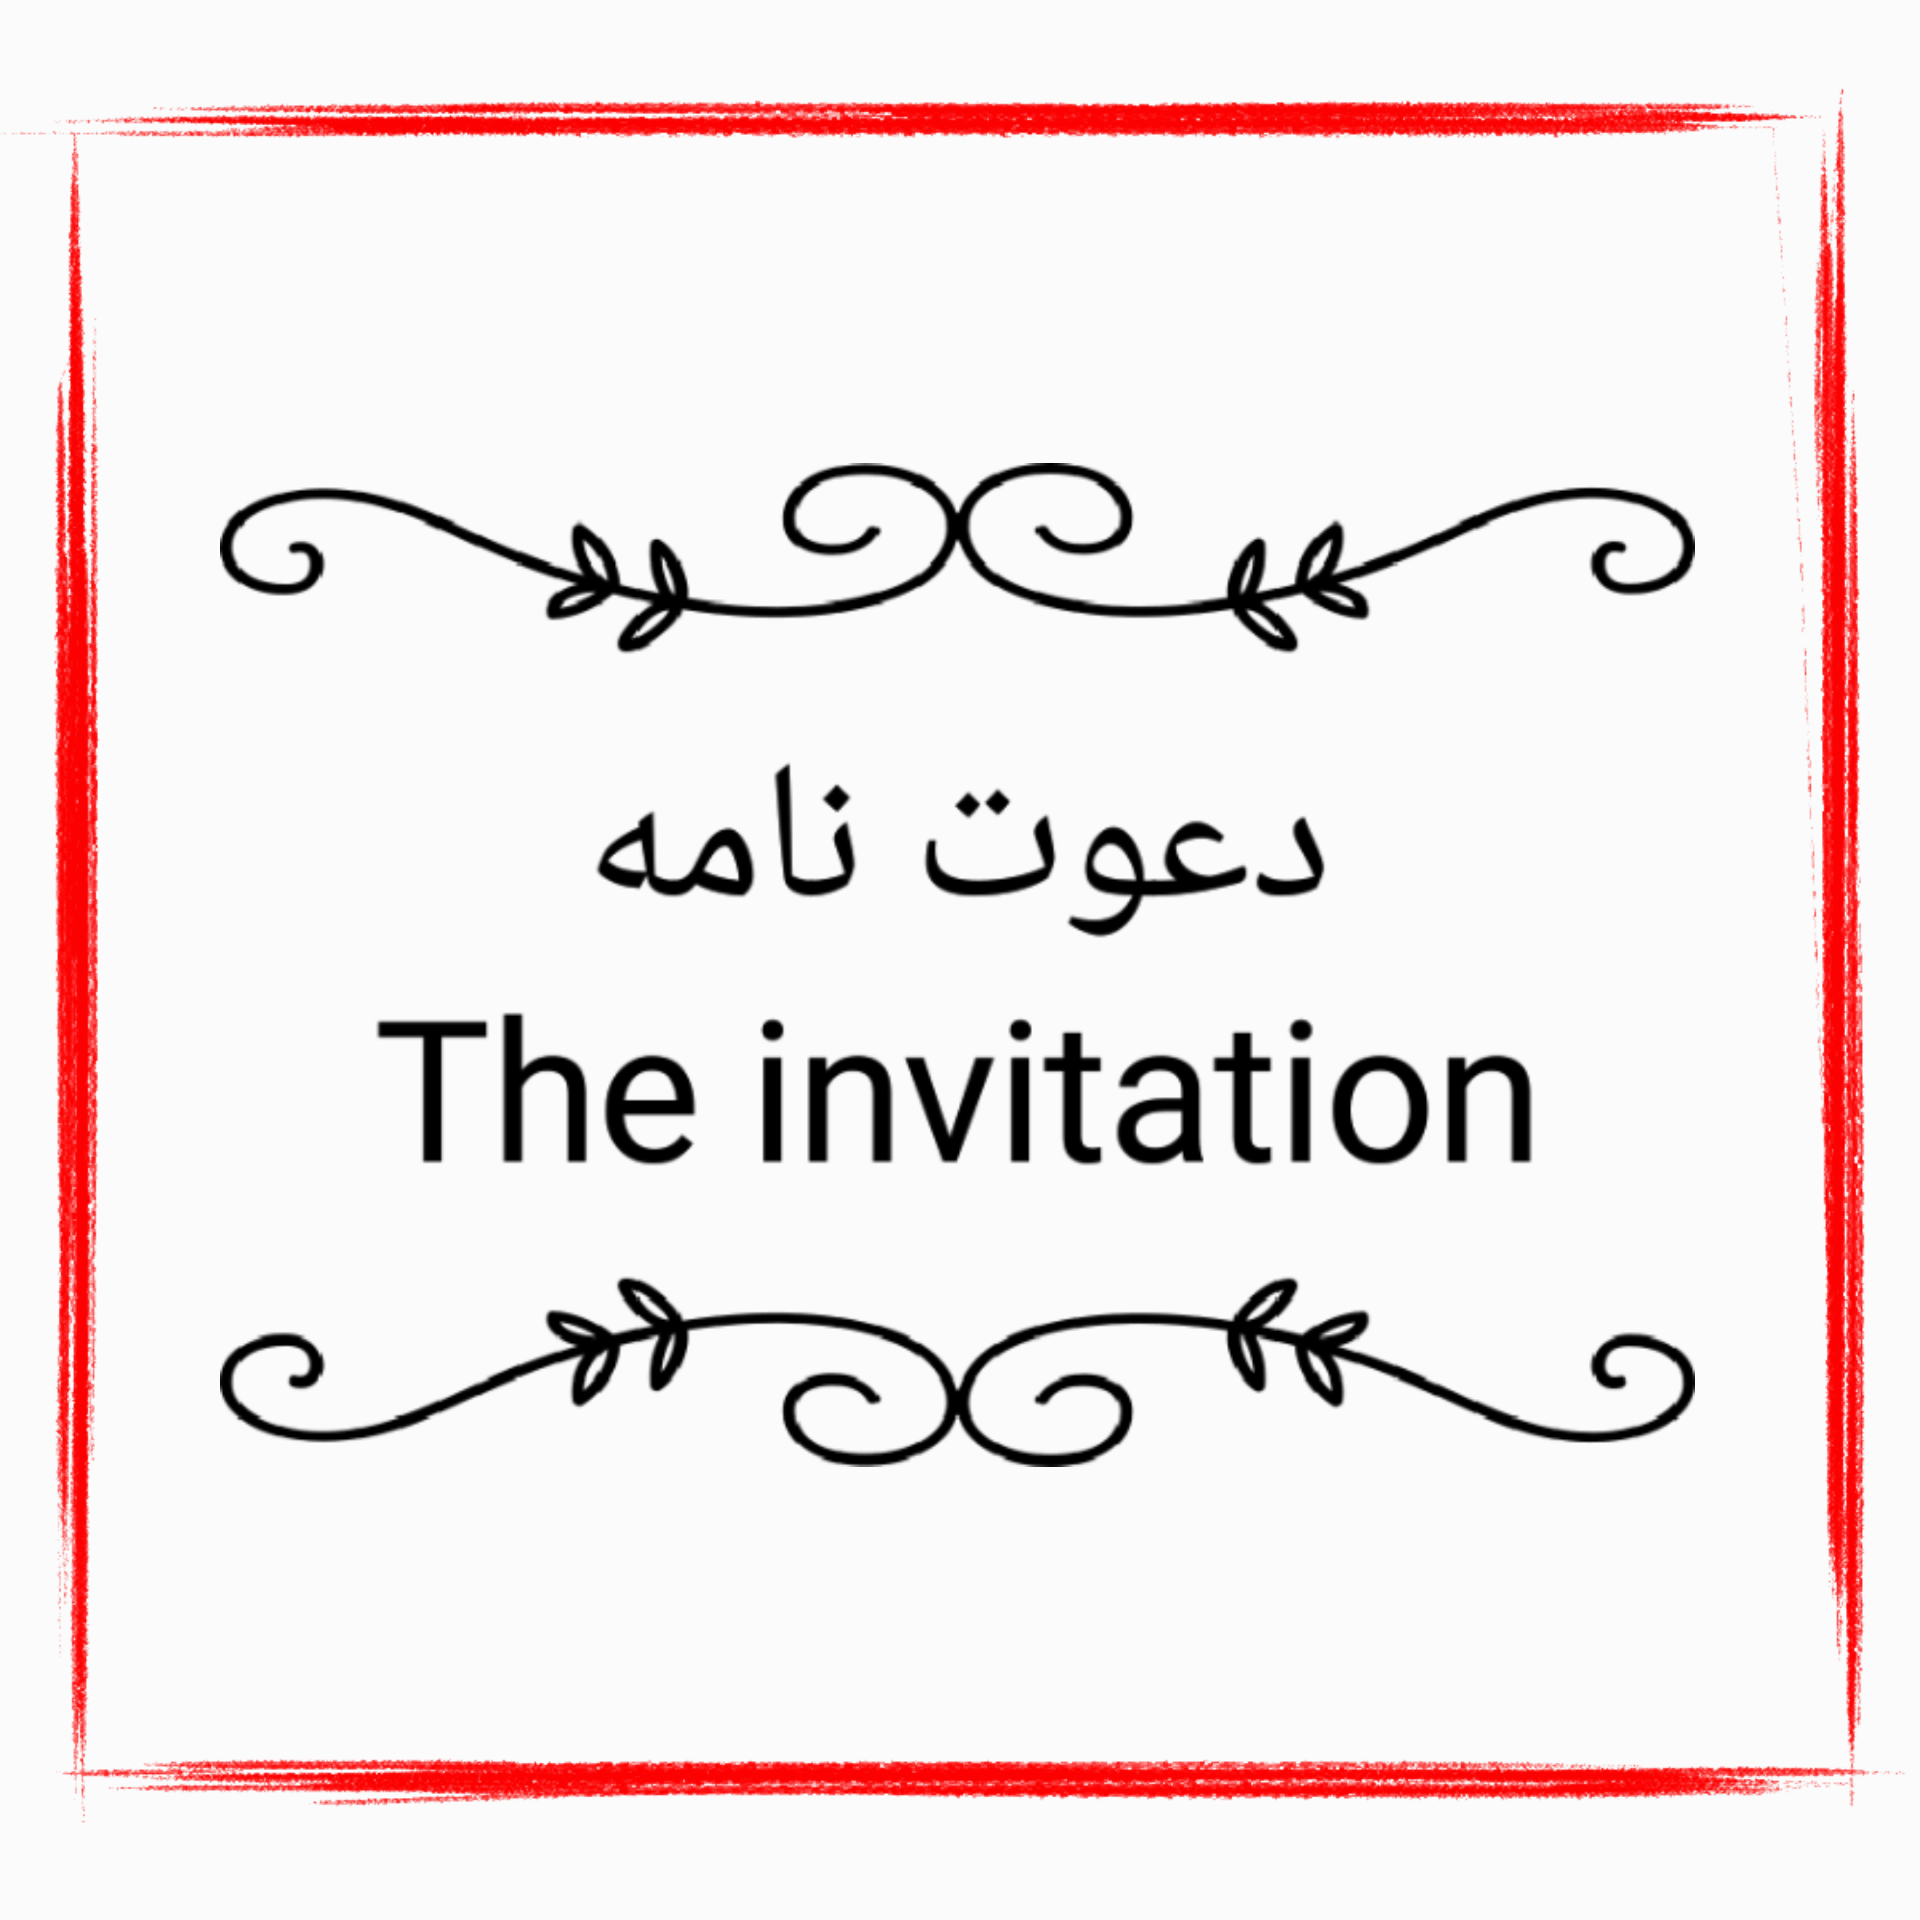 دعوت نامه،The invitation